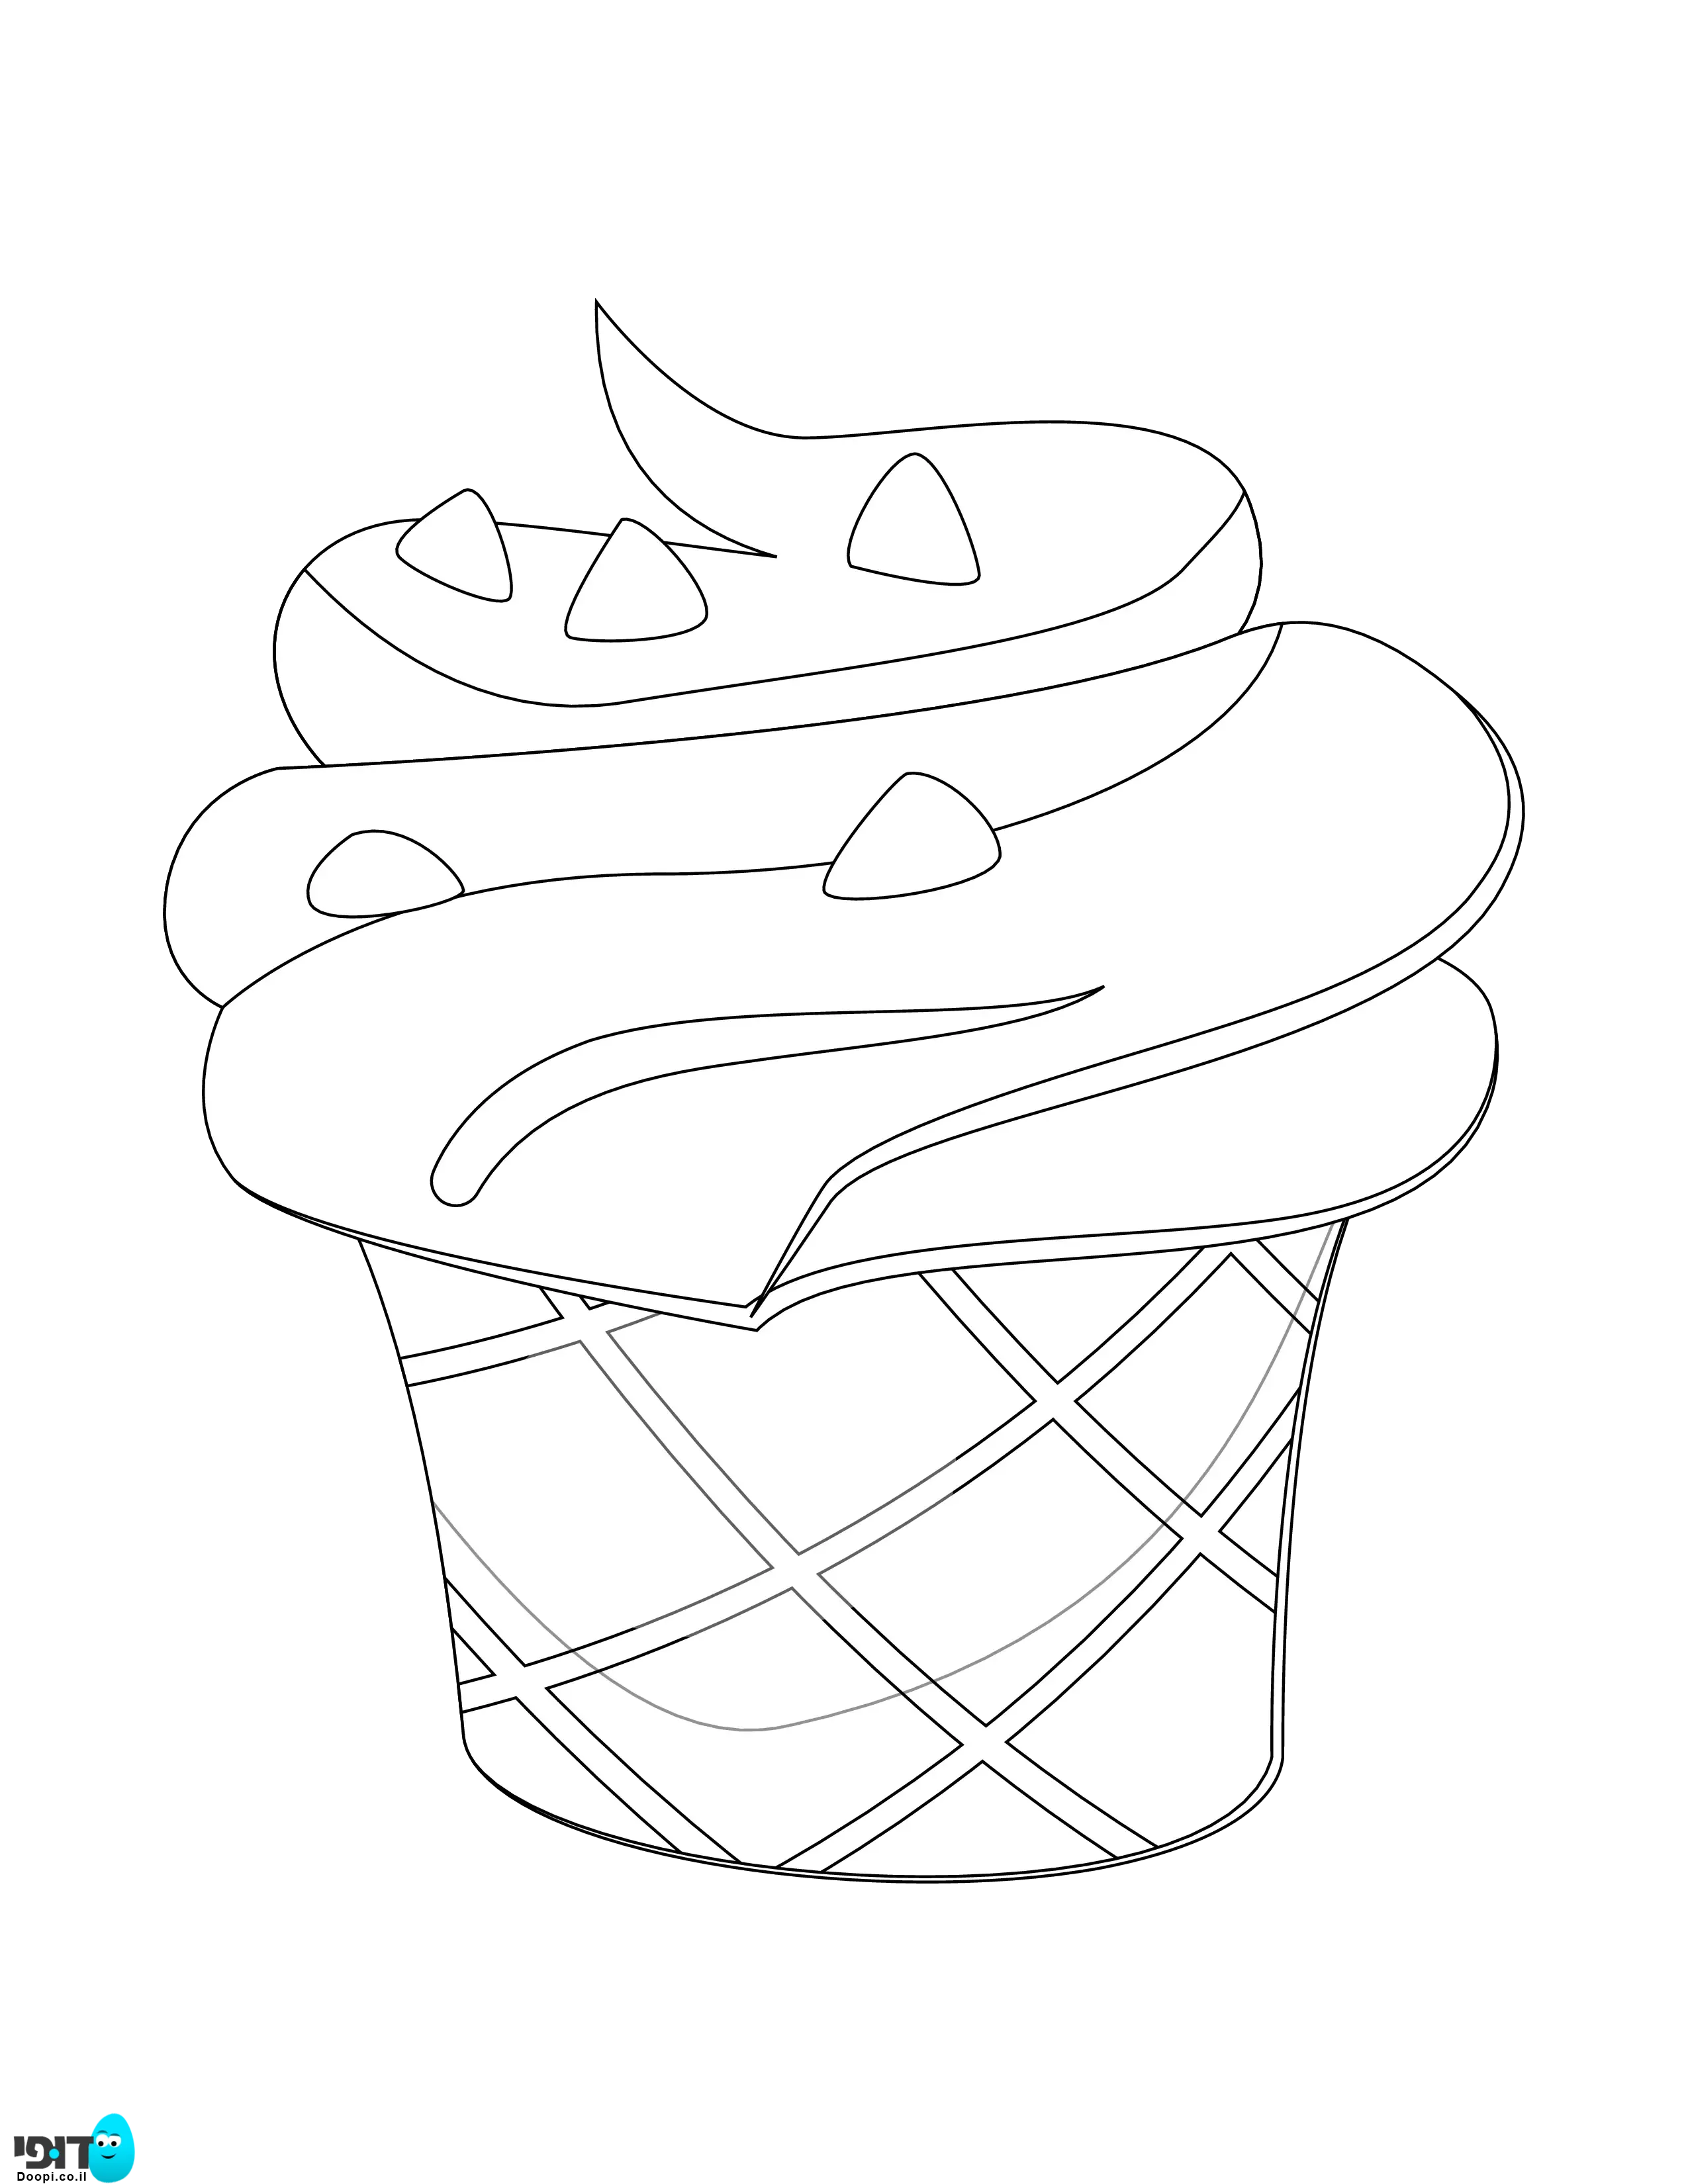 דף צביעה גלידה עם פצפוצים להדפסה